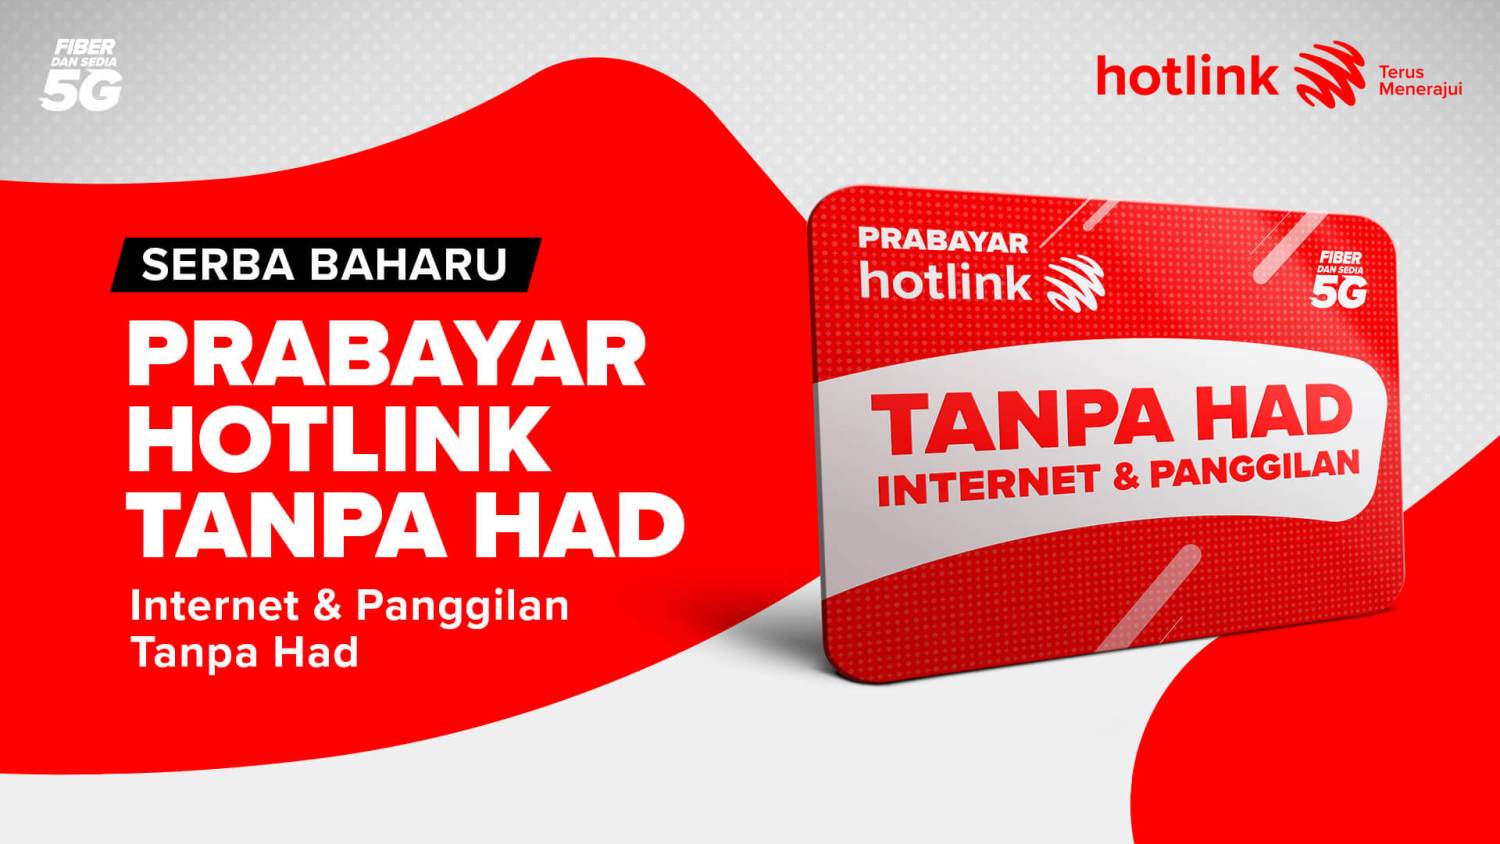 Pelan Hotlink Prepaid Unlimited Hadir Dengan Had FUP 50GB Data Untuk Pas Bulanan, 5GB Untuk Pas Harian